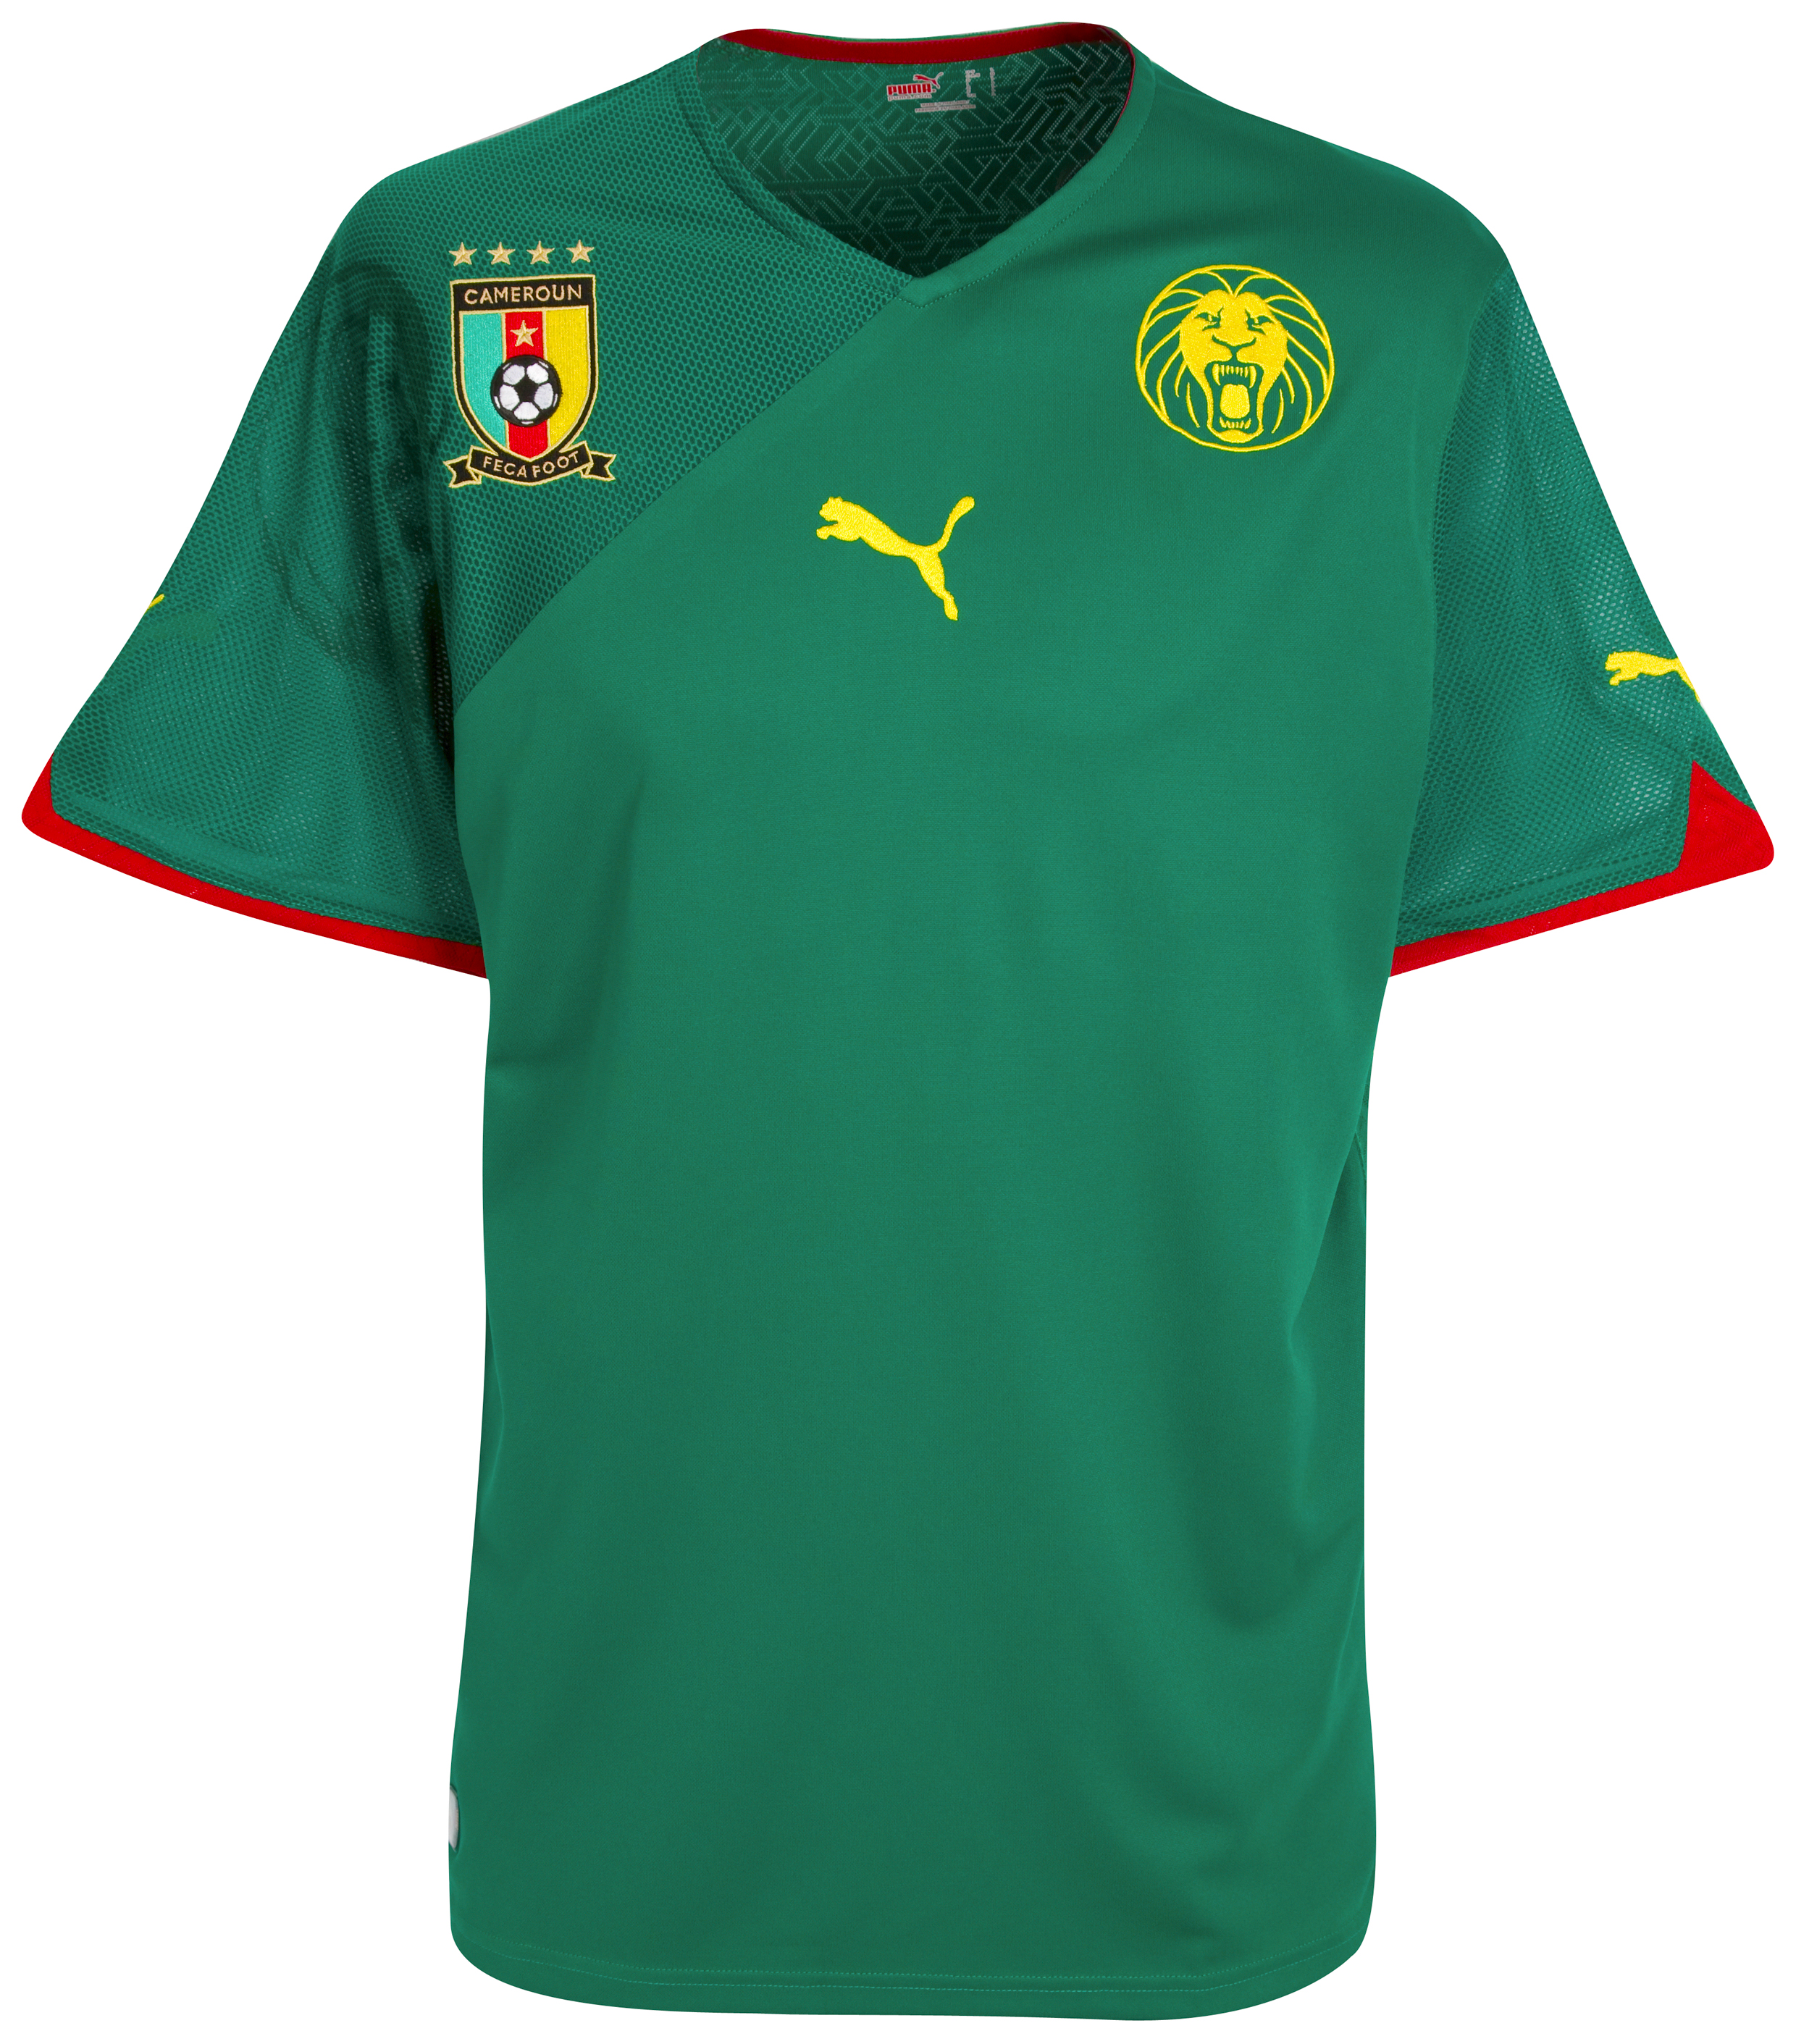 .¸-(_ (قمصان جميع المنتخبات لكأس العالم 2010) _)-,. Kb-60872